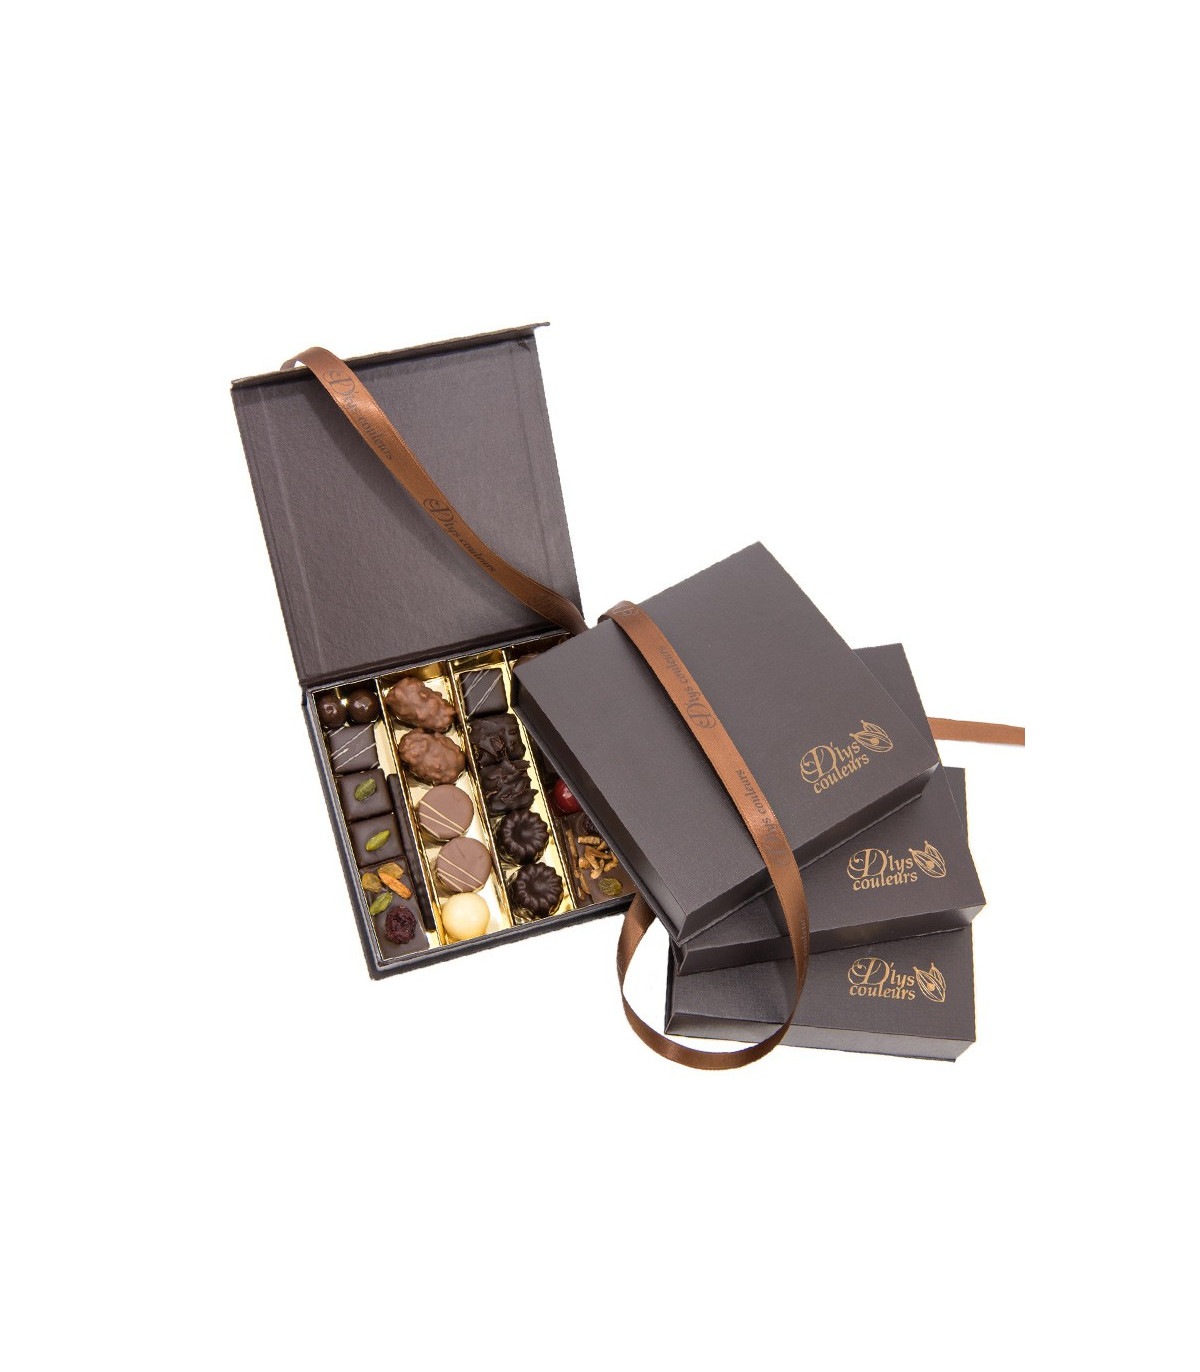 abonnement chocolat - Boutique de chocolat D'lys couleurs